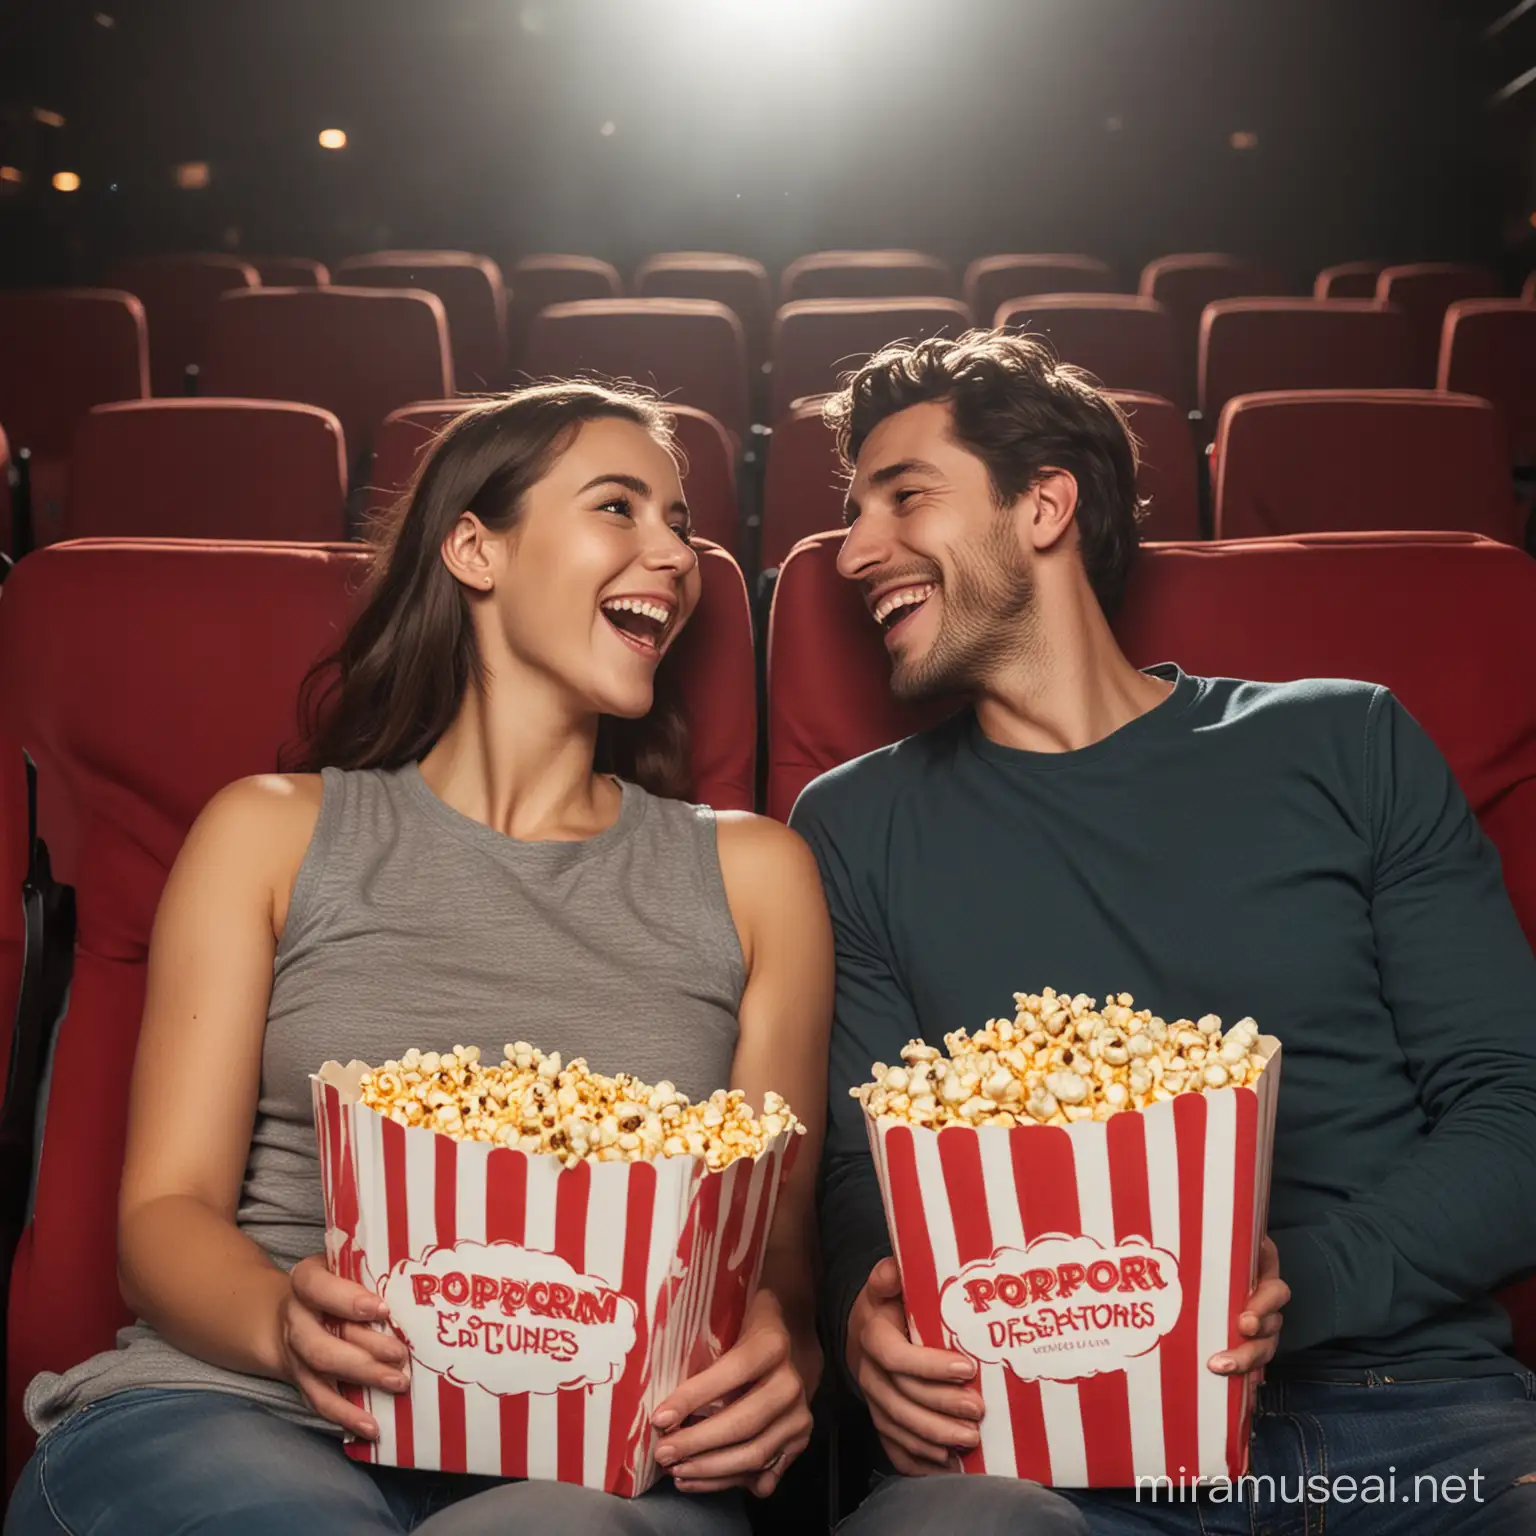 счастливая пара людей вдвоем сидит в кино с попкорном

